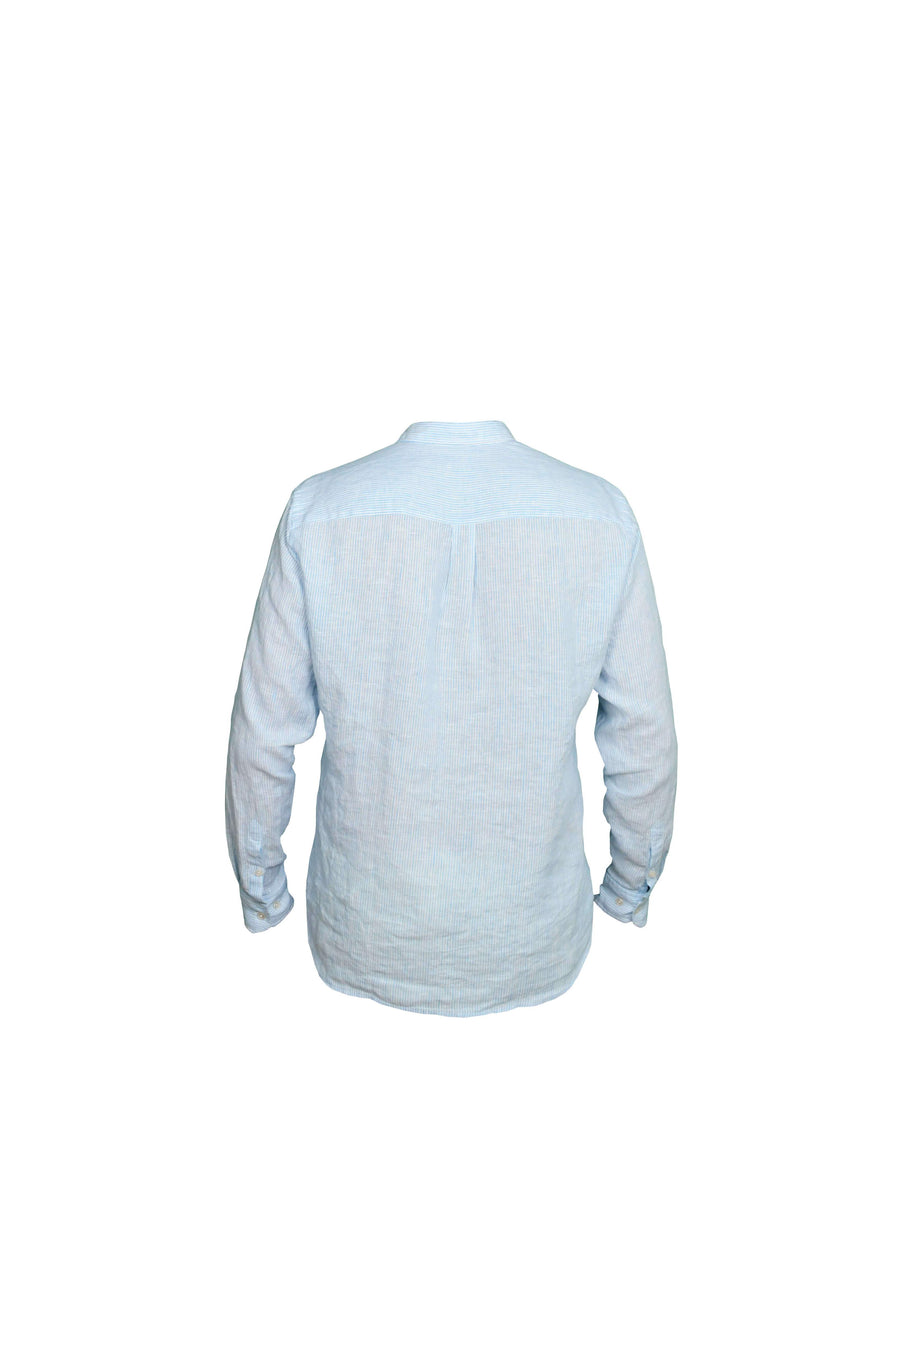 Faros Blue Stripes Linen Shirt - FAROS LINEN